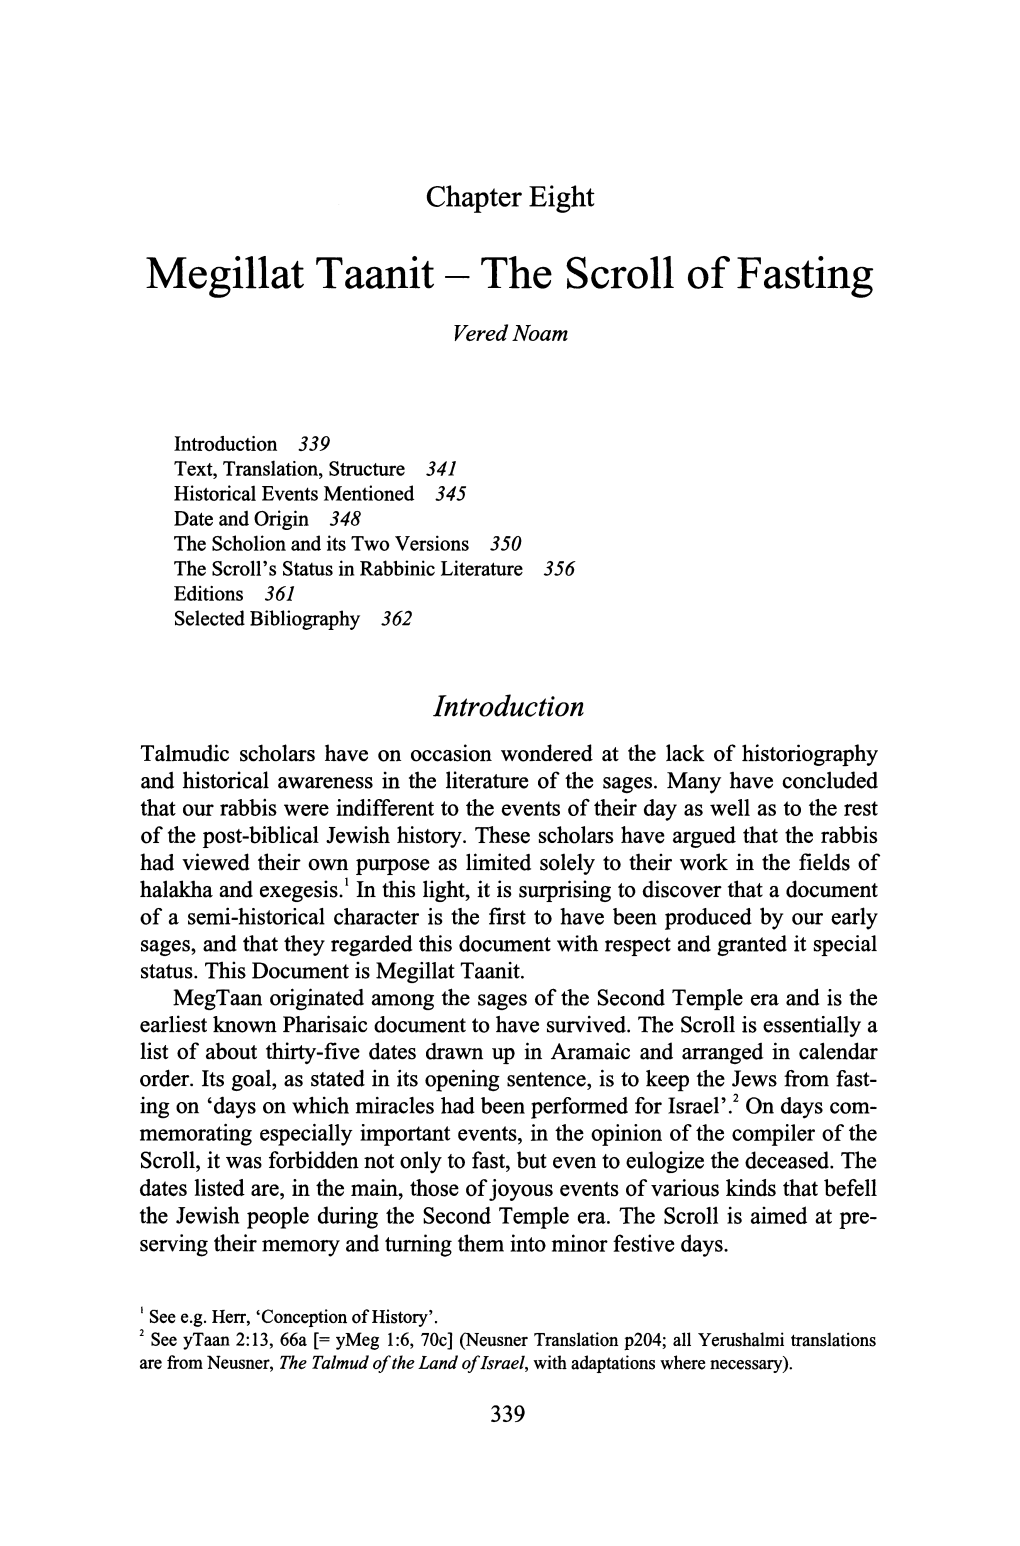 Megillat Taanit- the Scroll of Fasting